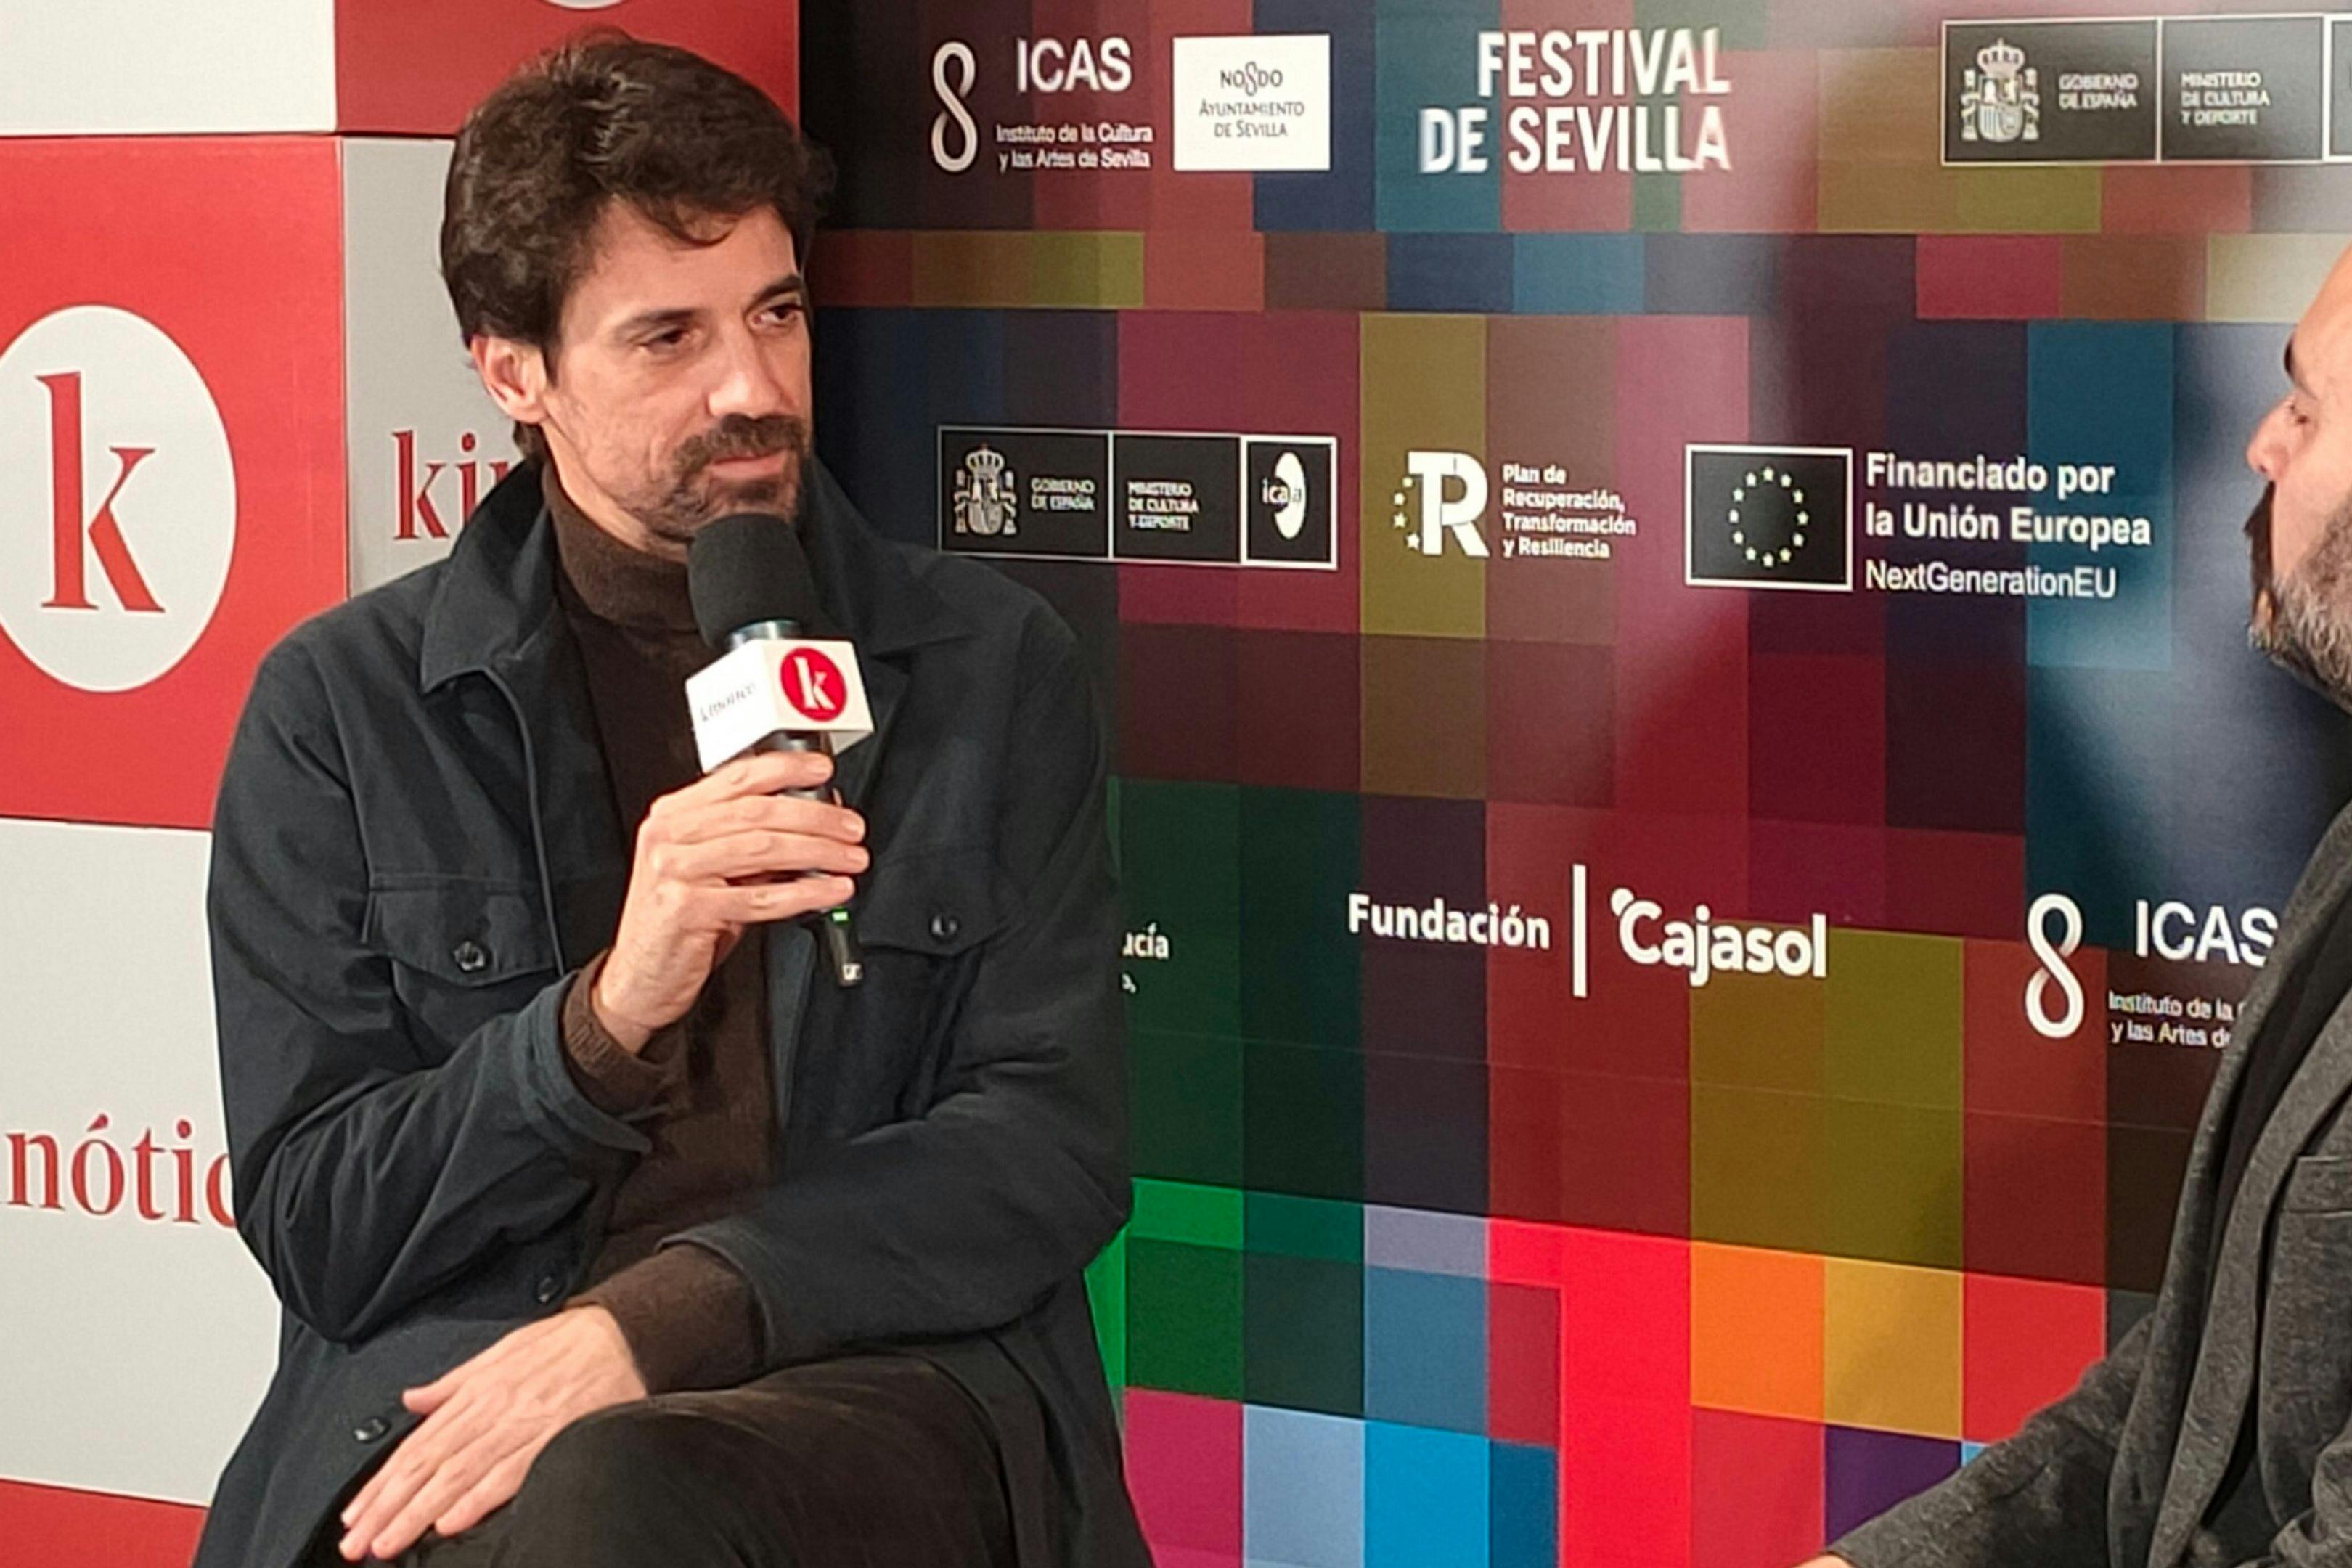 El director Manuel Muñoz Rivas, durante su entrevista con David Martos en el Festival de Sevilla